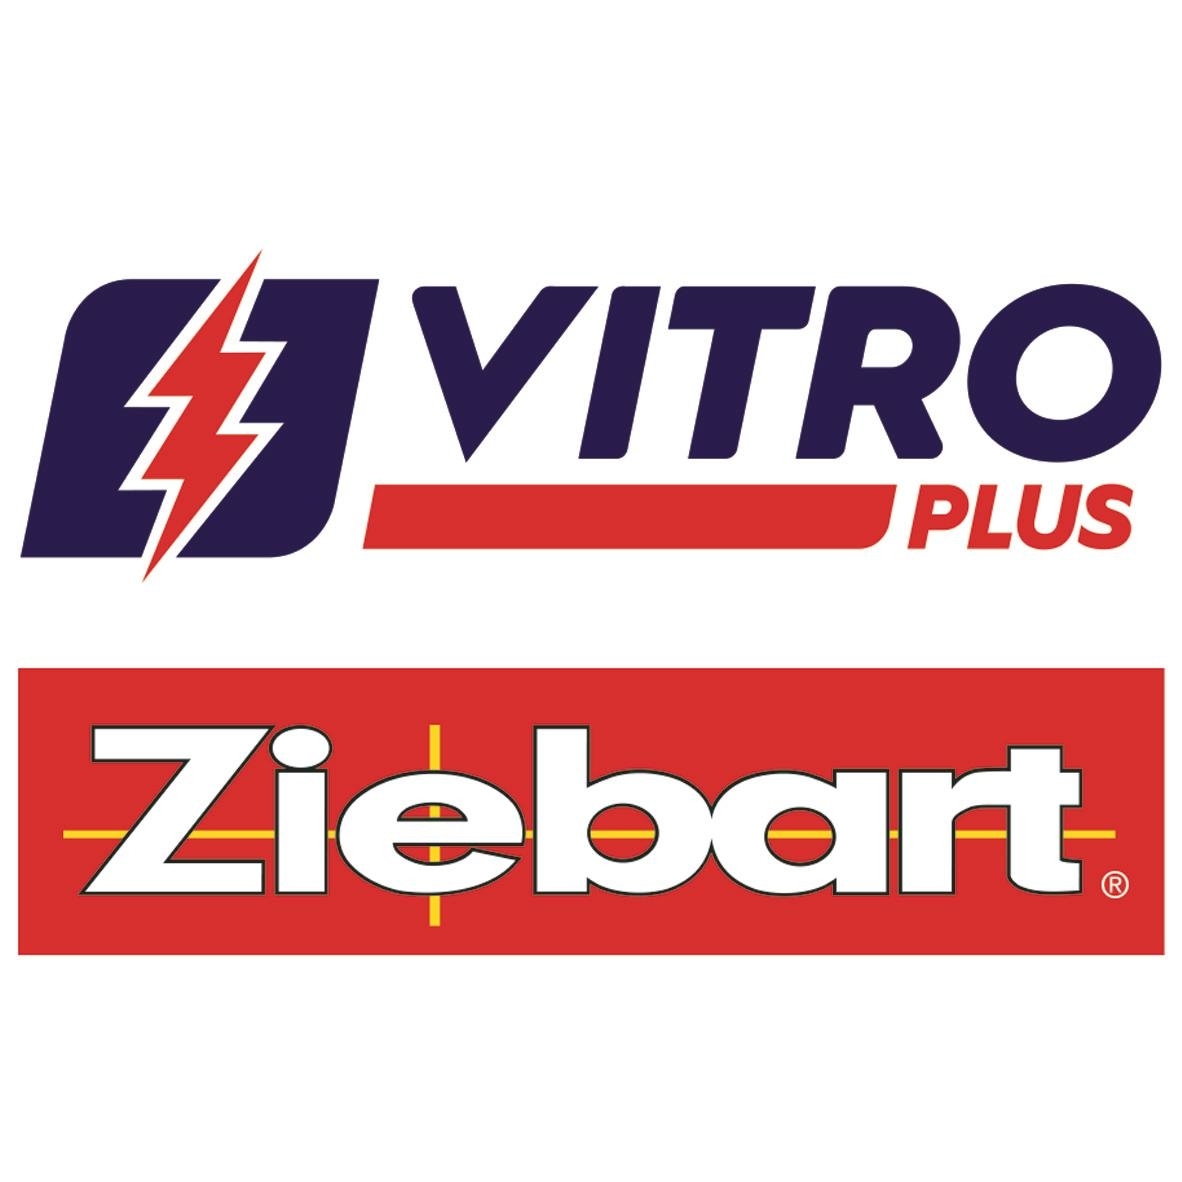 VitroPlus / Ziebart - Pare-brises et vitres d'autos